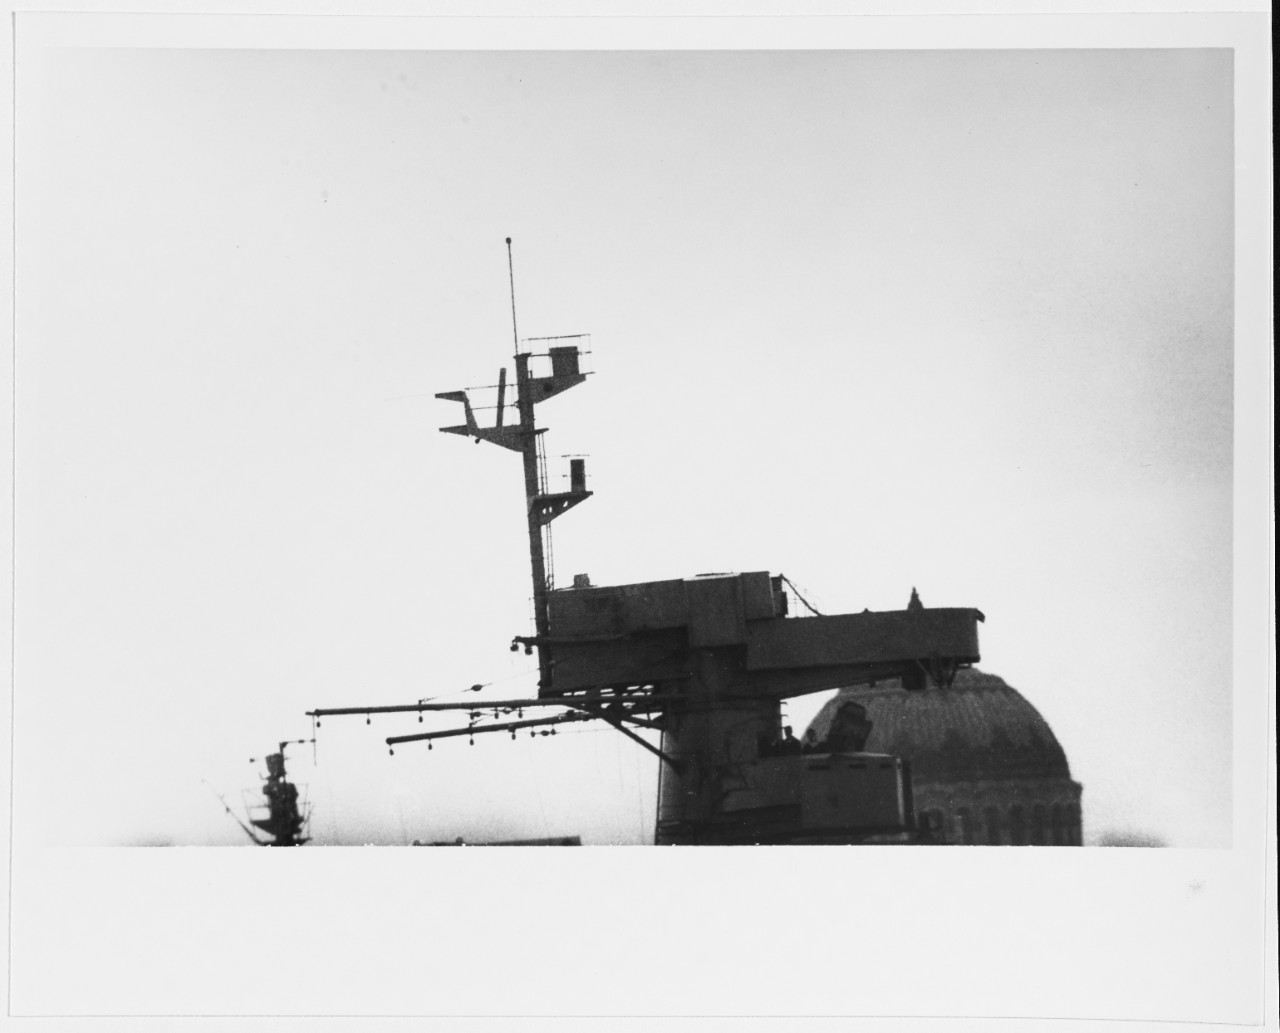 OKTYABRSKAYA REVOLUTSIA (Soviet Battleship, 1911-circa 1959)